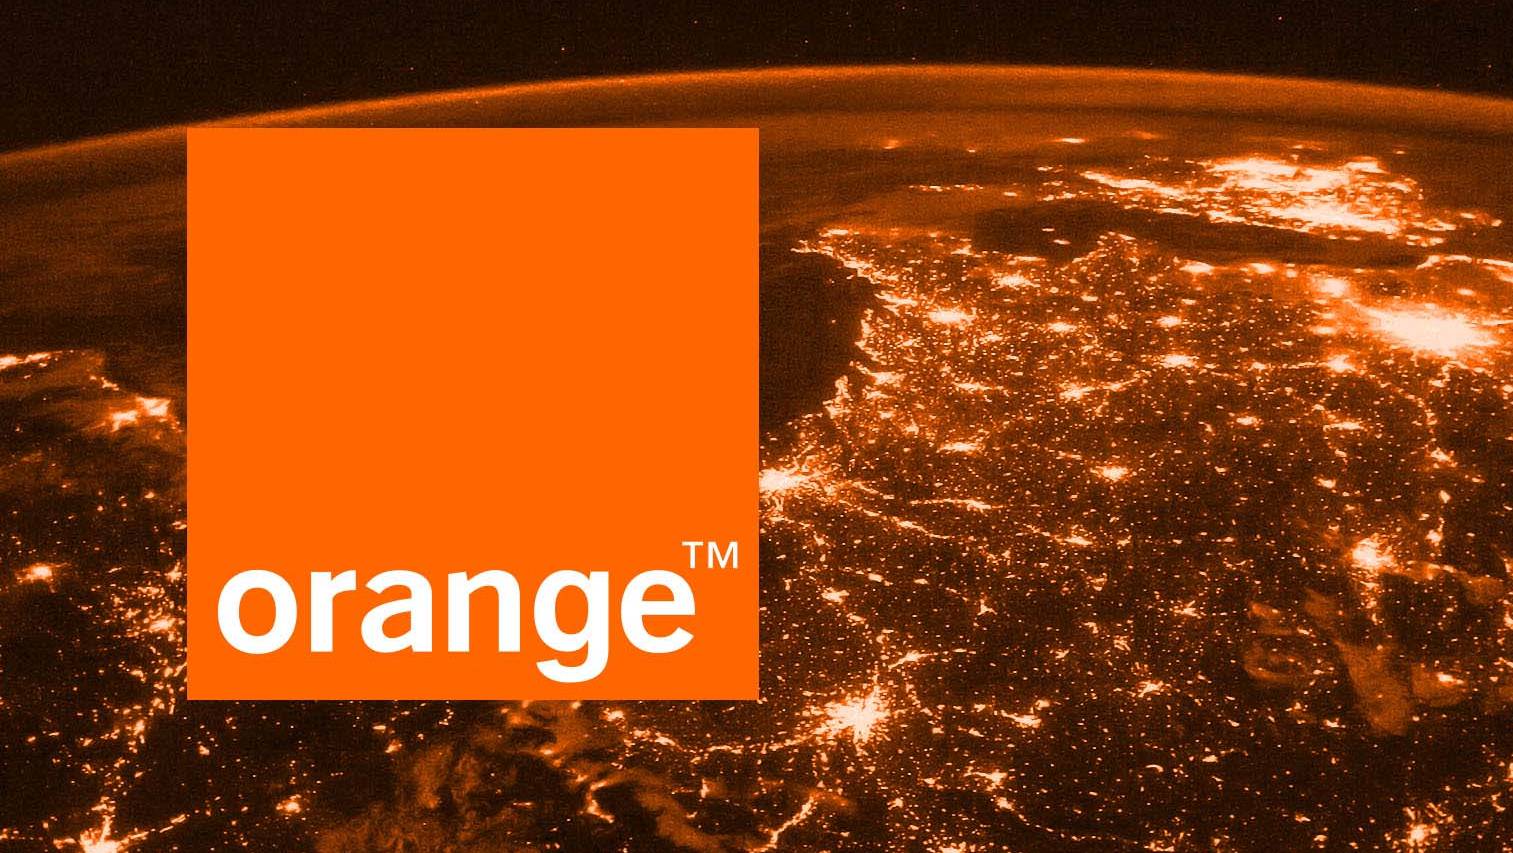 Orange Rumænien tilbyder de bedste smartphone-kampagner den 12. september